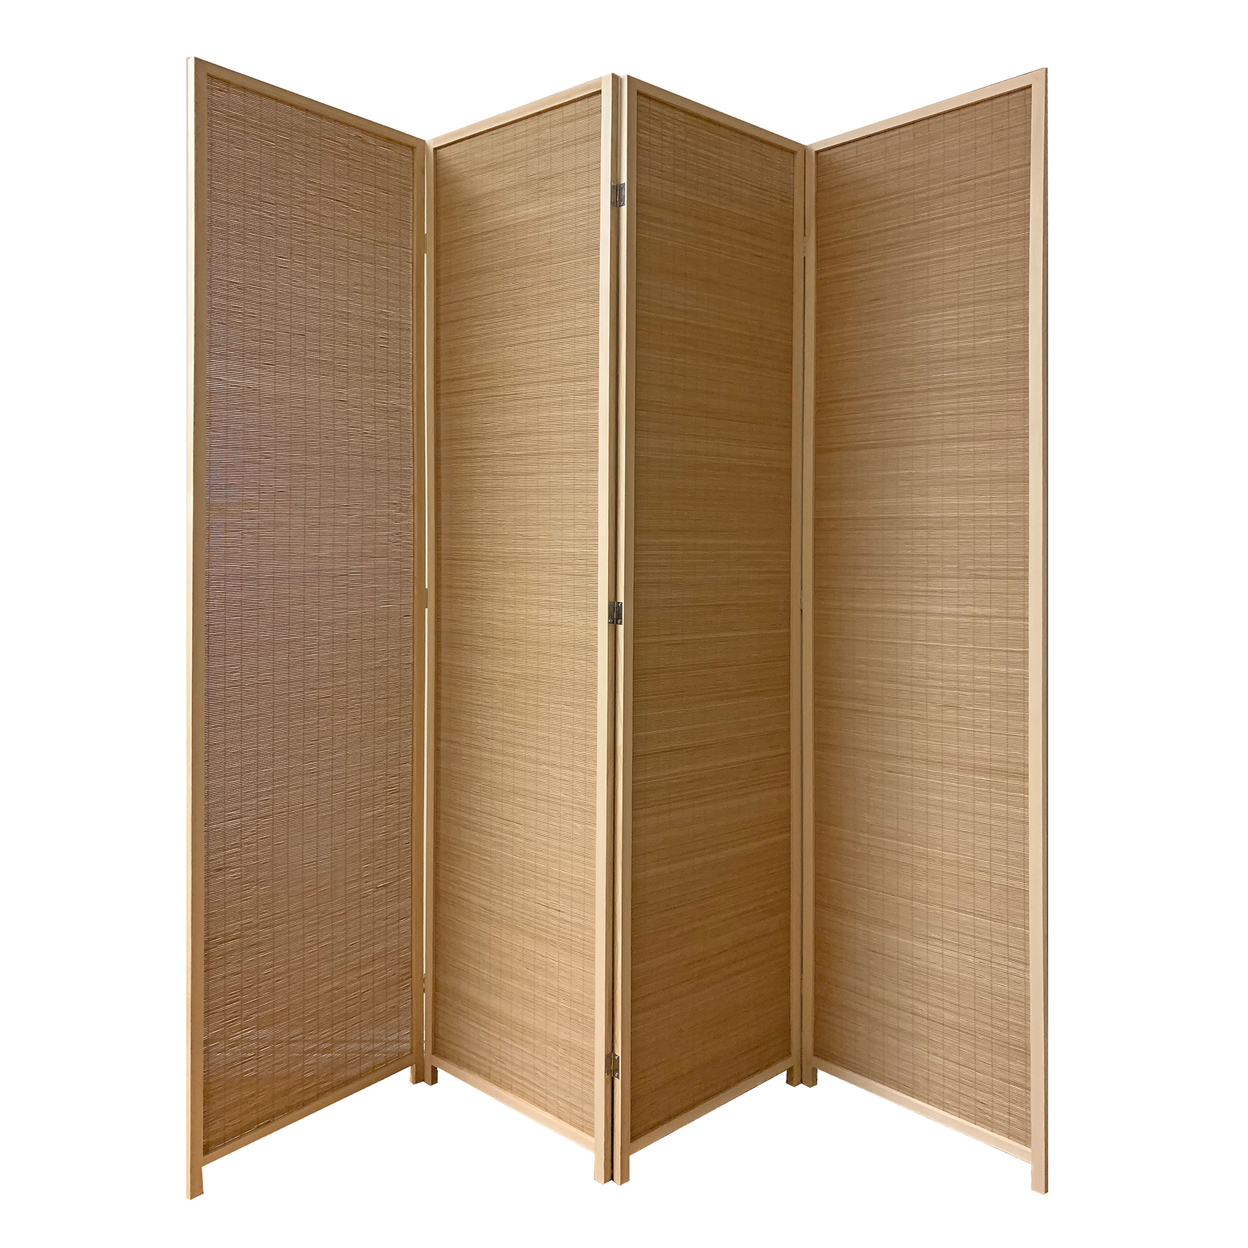 4 Panel Bamboo Shade Roll Room Divider, Natural Brown- Saltoro Sherpi